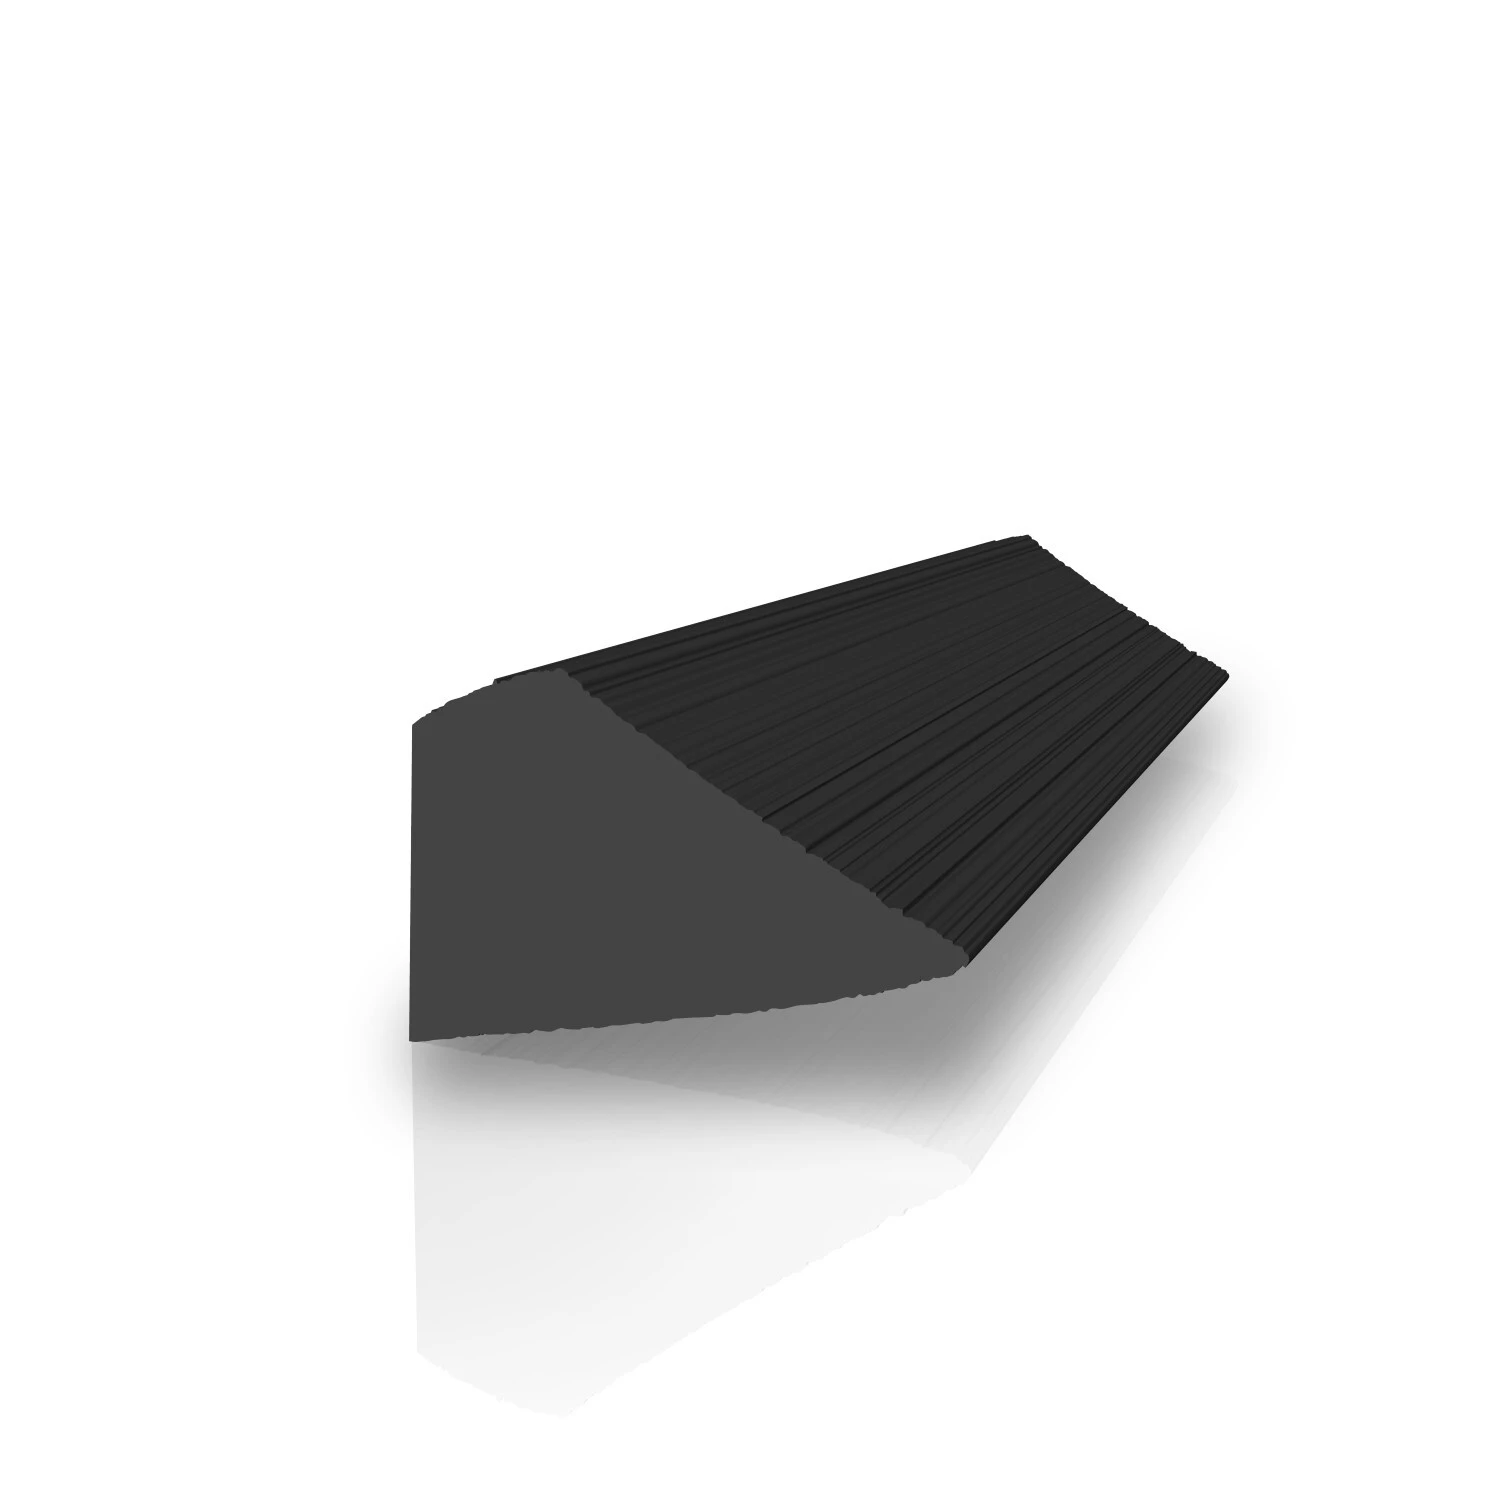 Gummi-Granulatmatte GS  8,0 mm stark  in schwarz